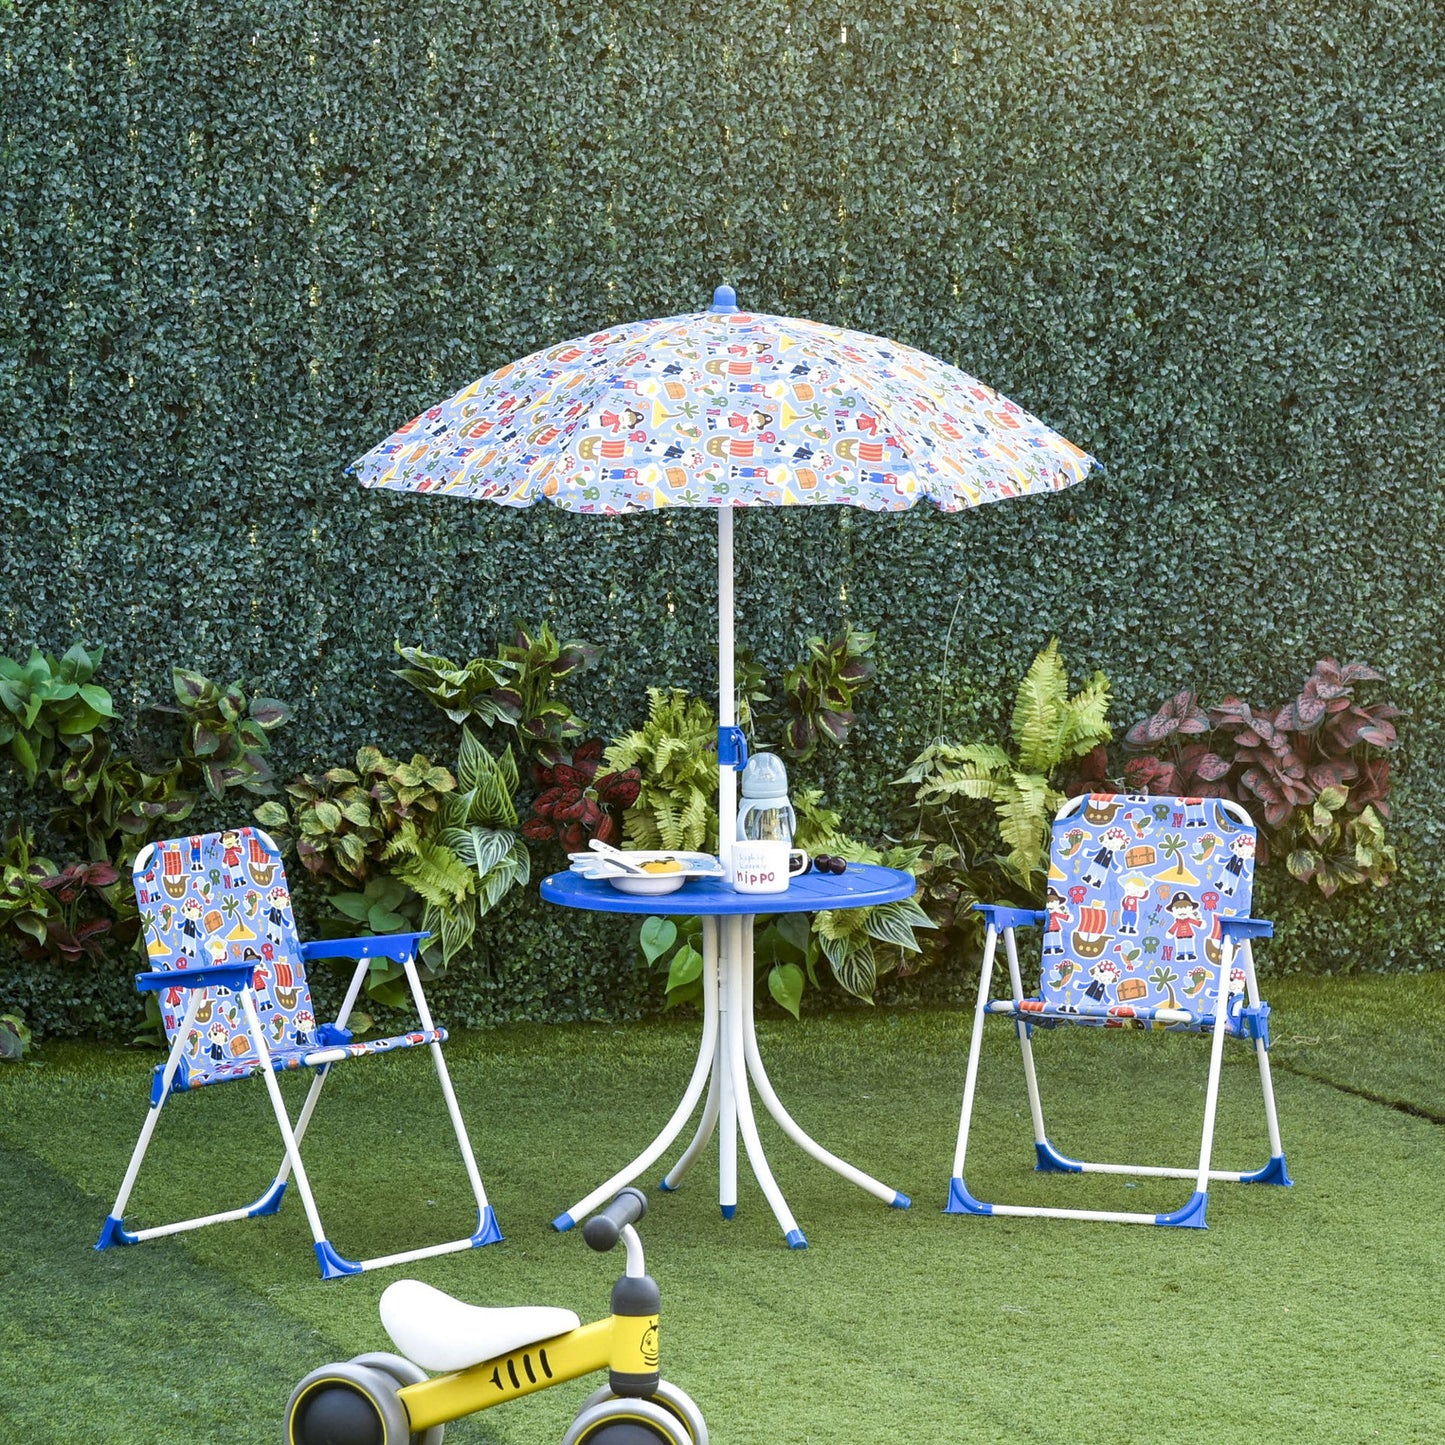 Nancy's Jalacte 4-delige kinderset tuintafel 2 klapstoelen parasol camping kinderzitset tuinmeubilair voor 3-5 jaar blauw